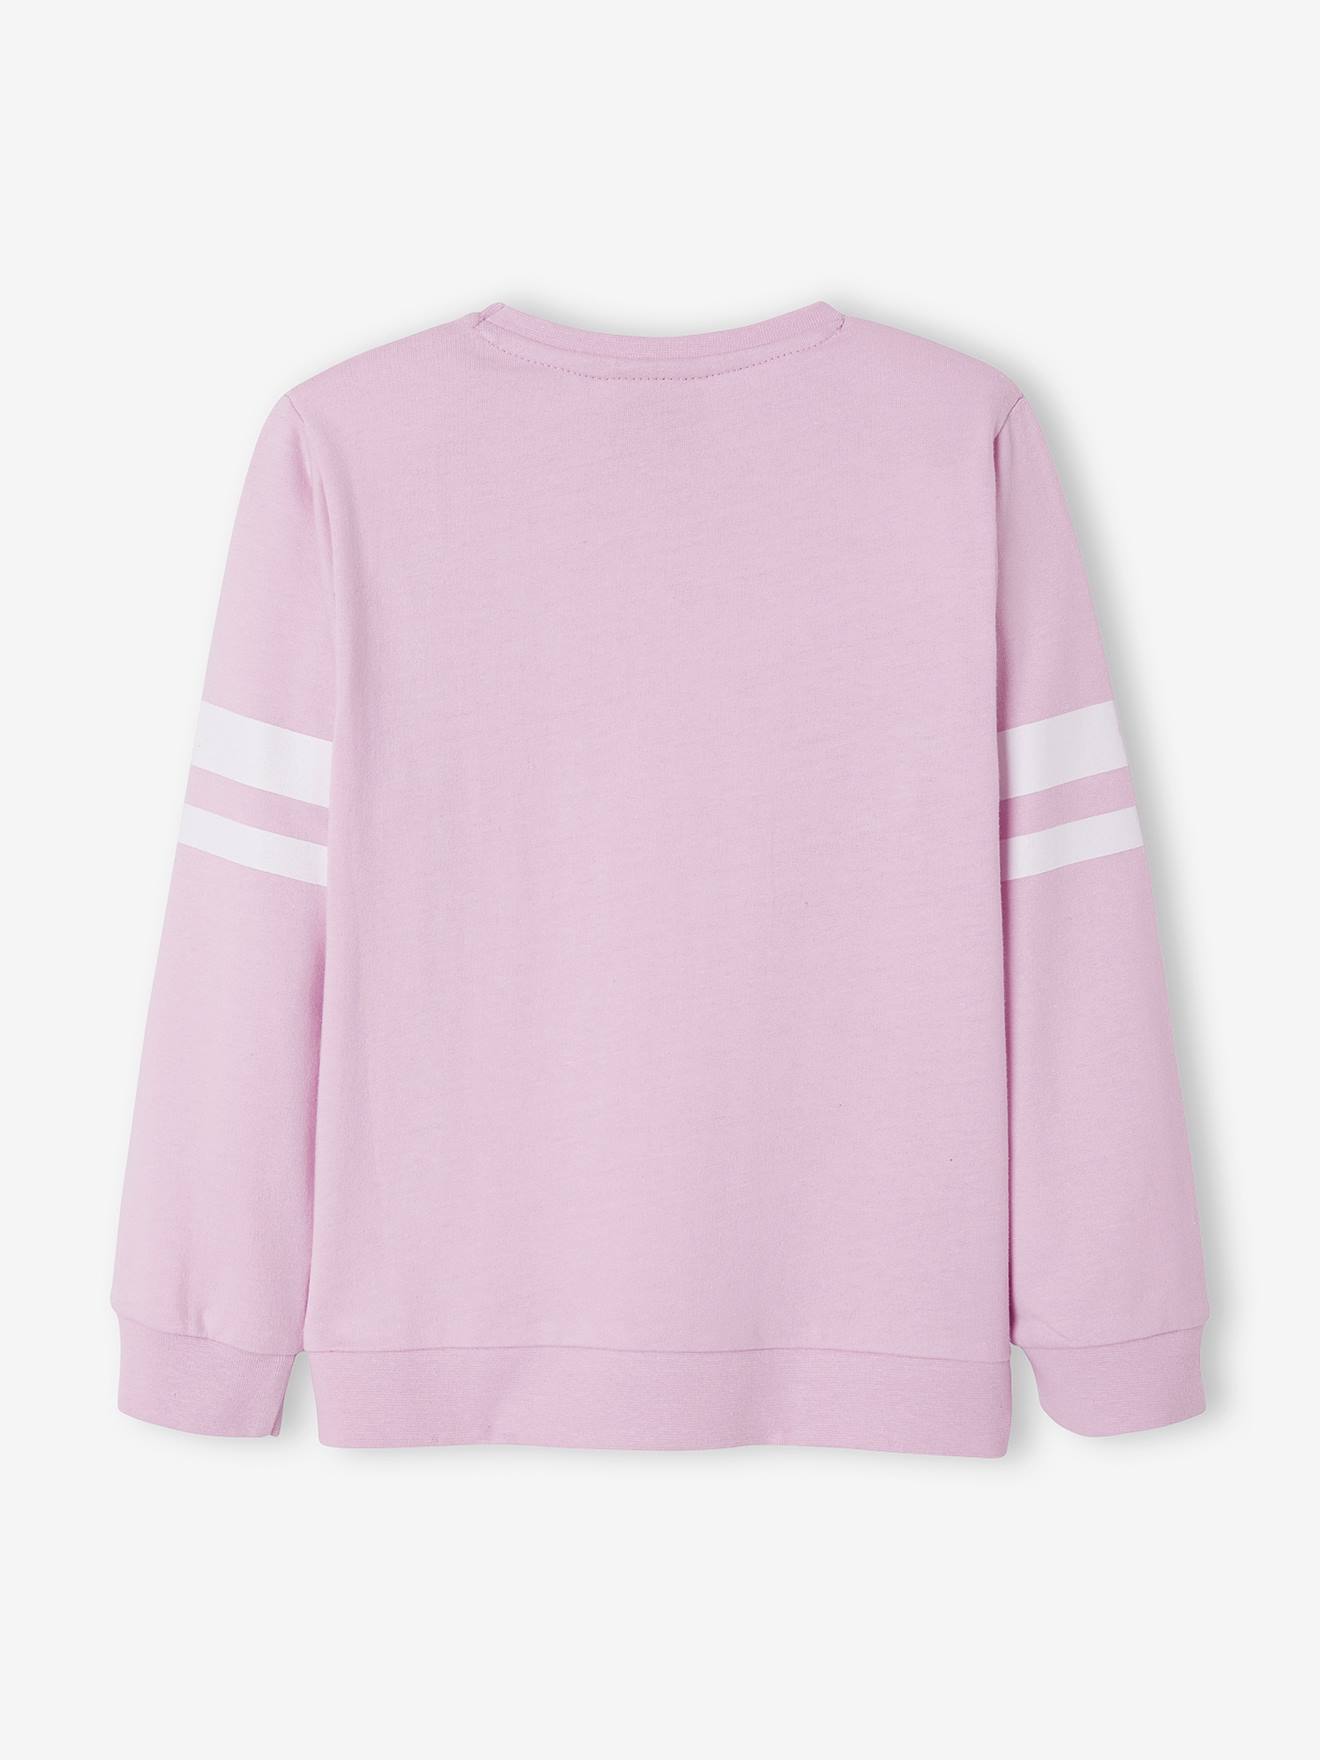 Snoopy Sweatshirt in Fleece for Girls, by Peanuts® - purple light